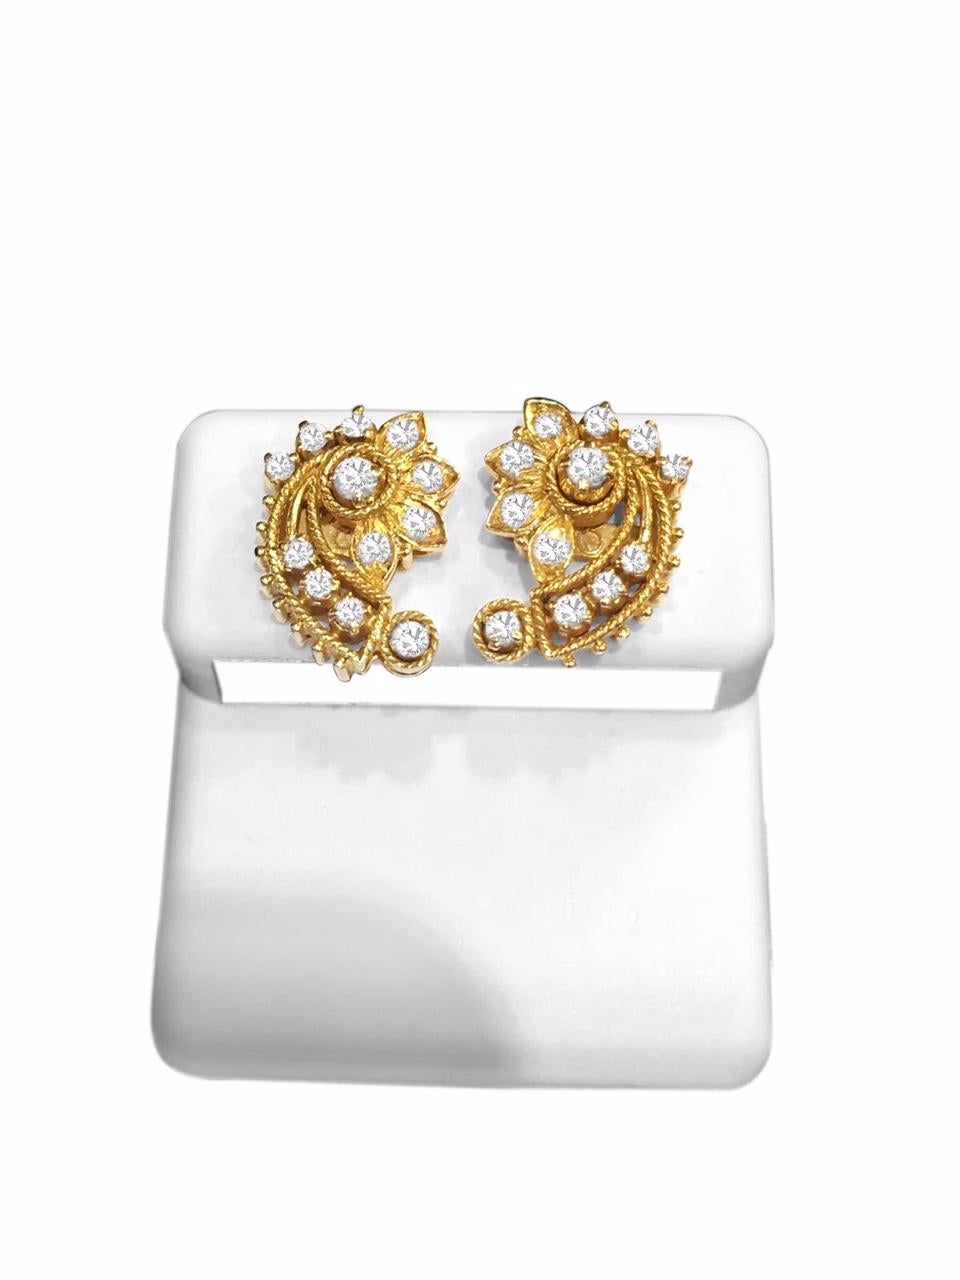 Diese Ohrringe aus 18-karätigem Gelbgold sind mit 1,14 Karat runden Diamanten im Brillantschliff mit VS-Reinheit und F-G-Farbe besetzt. Ihr Design strahlt einen eleganten asiatischen/indischen Stil aus und verleiht jedem Ensemble einen Hauch von